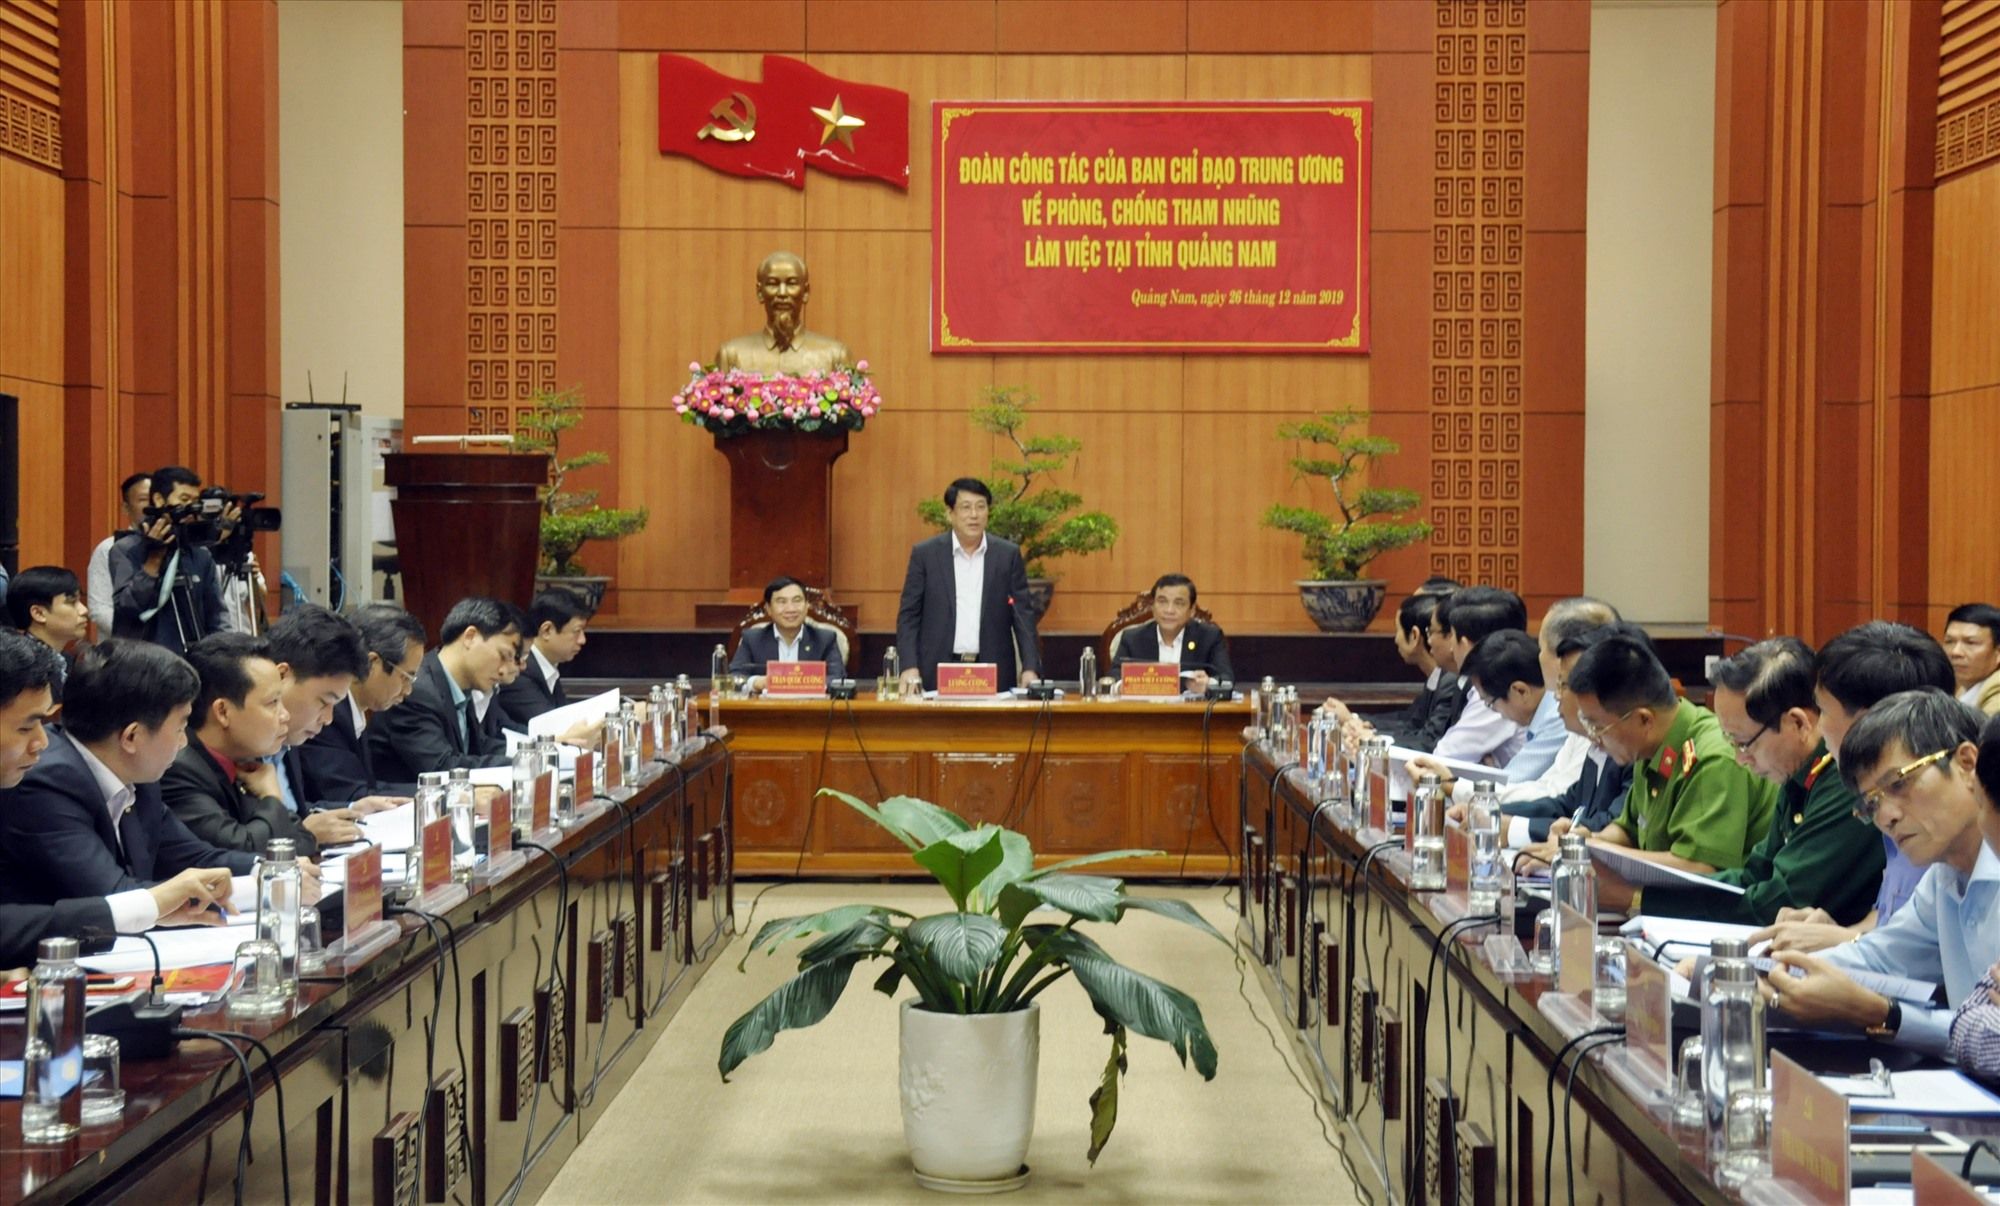 Đoàn công tác của Ban Chỉ đạo Trung ương về phòng, chống tham nhũng làm việc tại Quảng Nam